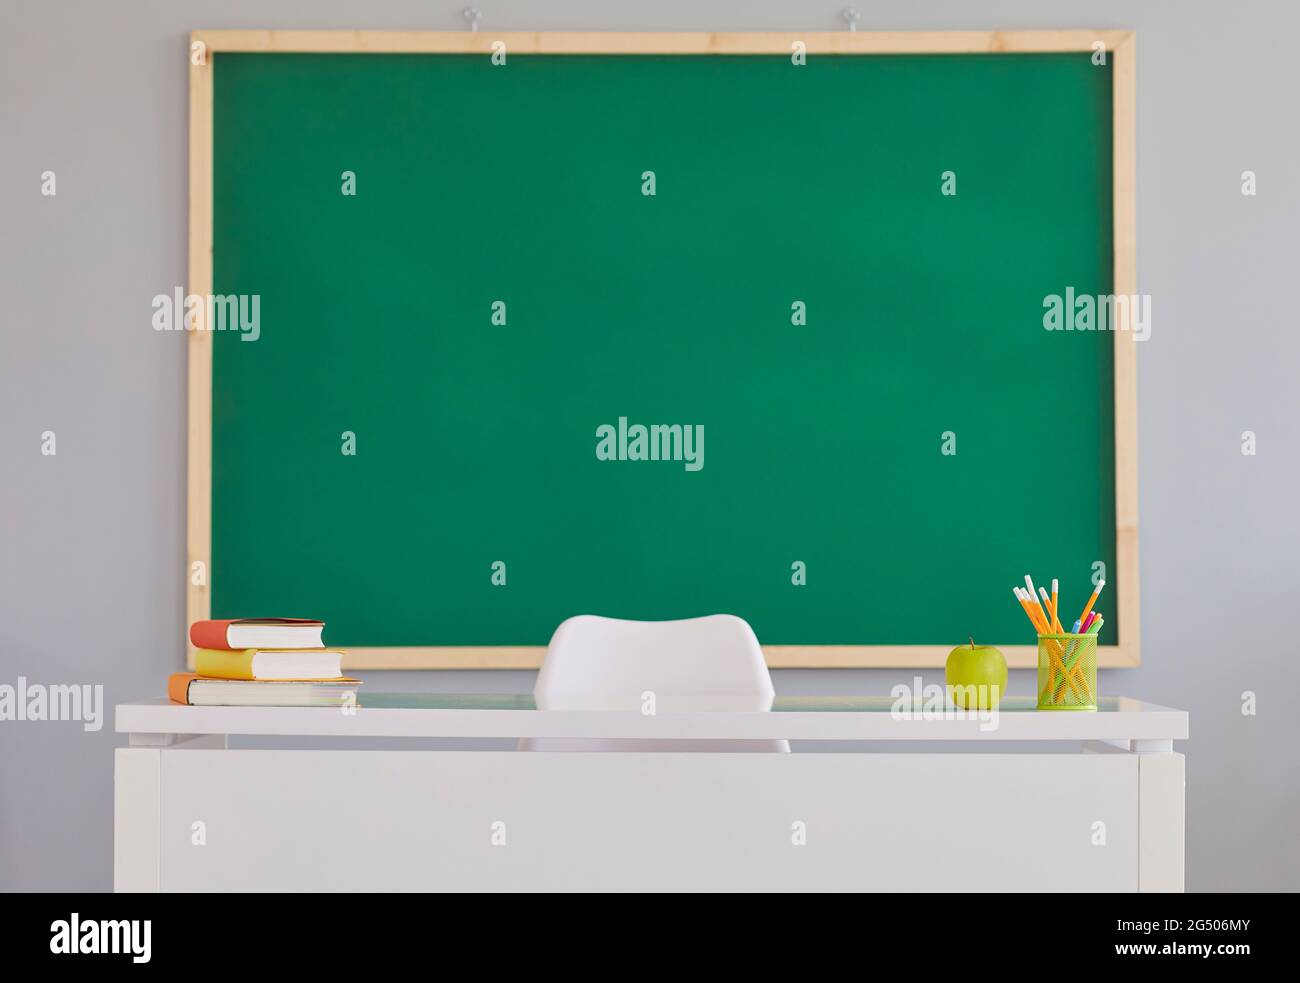 Đối với giáo viên hay bất kỳ ai đang tìm kiếm phông nền thích hợp để sử dụng trong lớp học, hãy nhấp vào đây để xem các lớp học với bàn giáo viên và bảng đen trống để viết được trình bày trên màn hình xanh. Chắc chắn bạn sẽ tìm được phông nền hoàn hảo cho lớp học của mình.